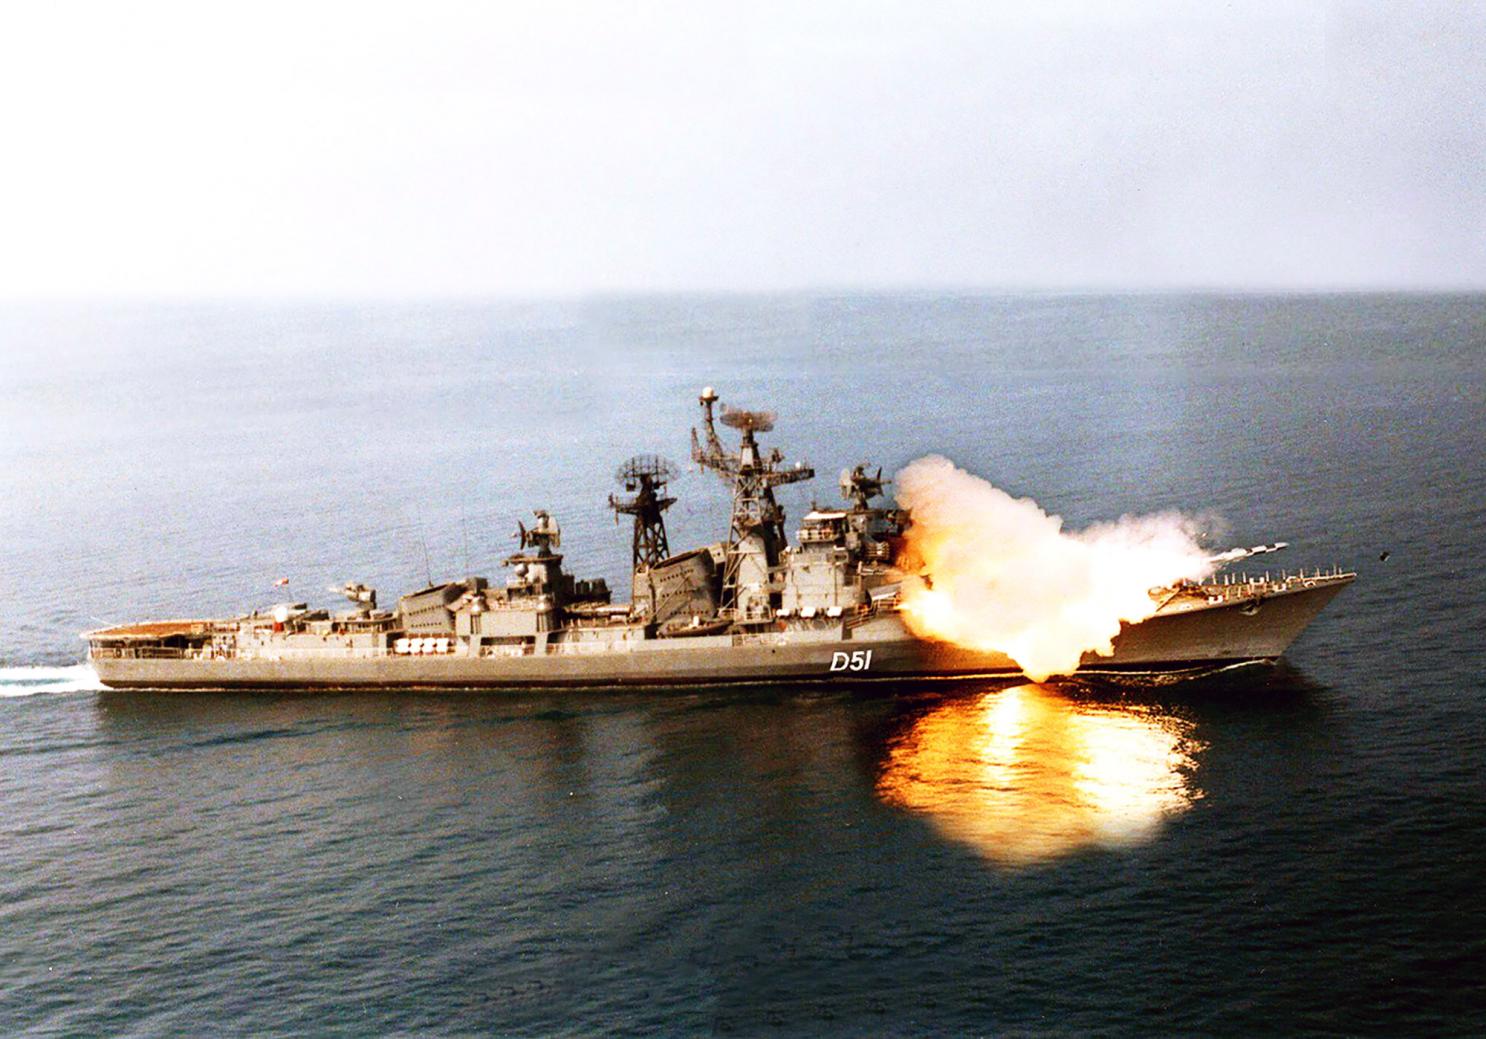 Θα χρησιμοποιήσει Brahmos για να πλήξει το ναύσταθμο στο Καράτσι το ινδικό Ναυτικό;